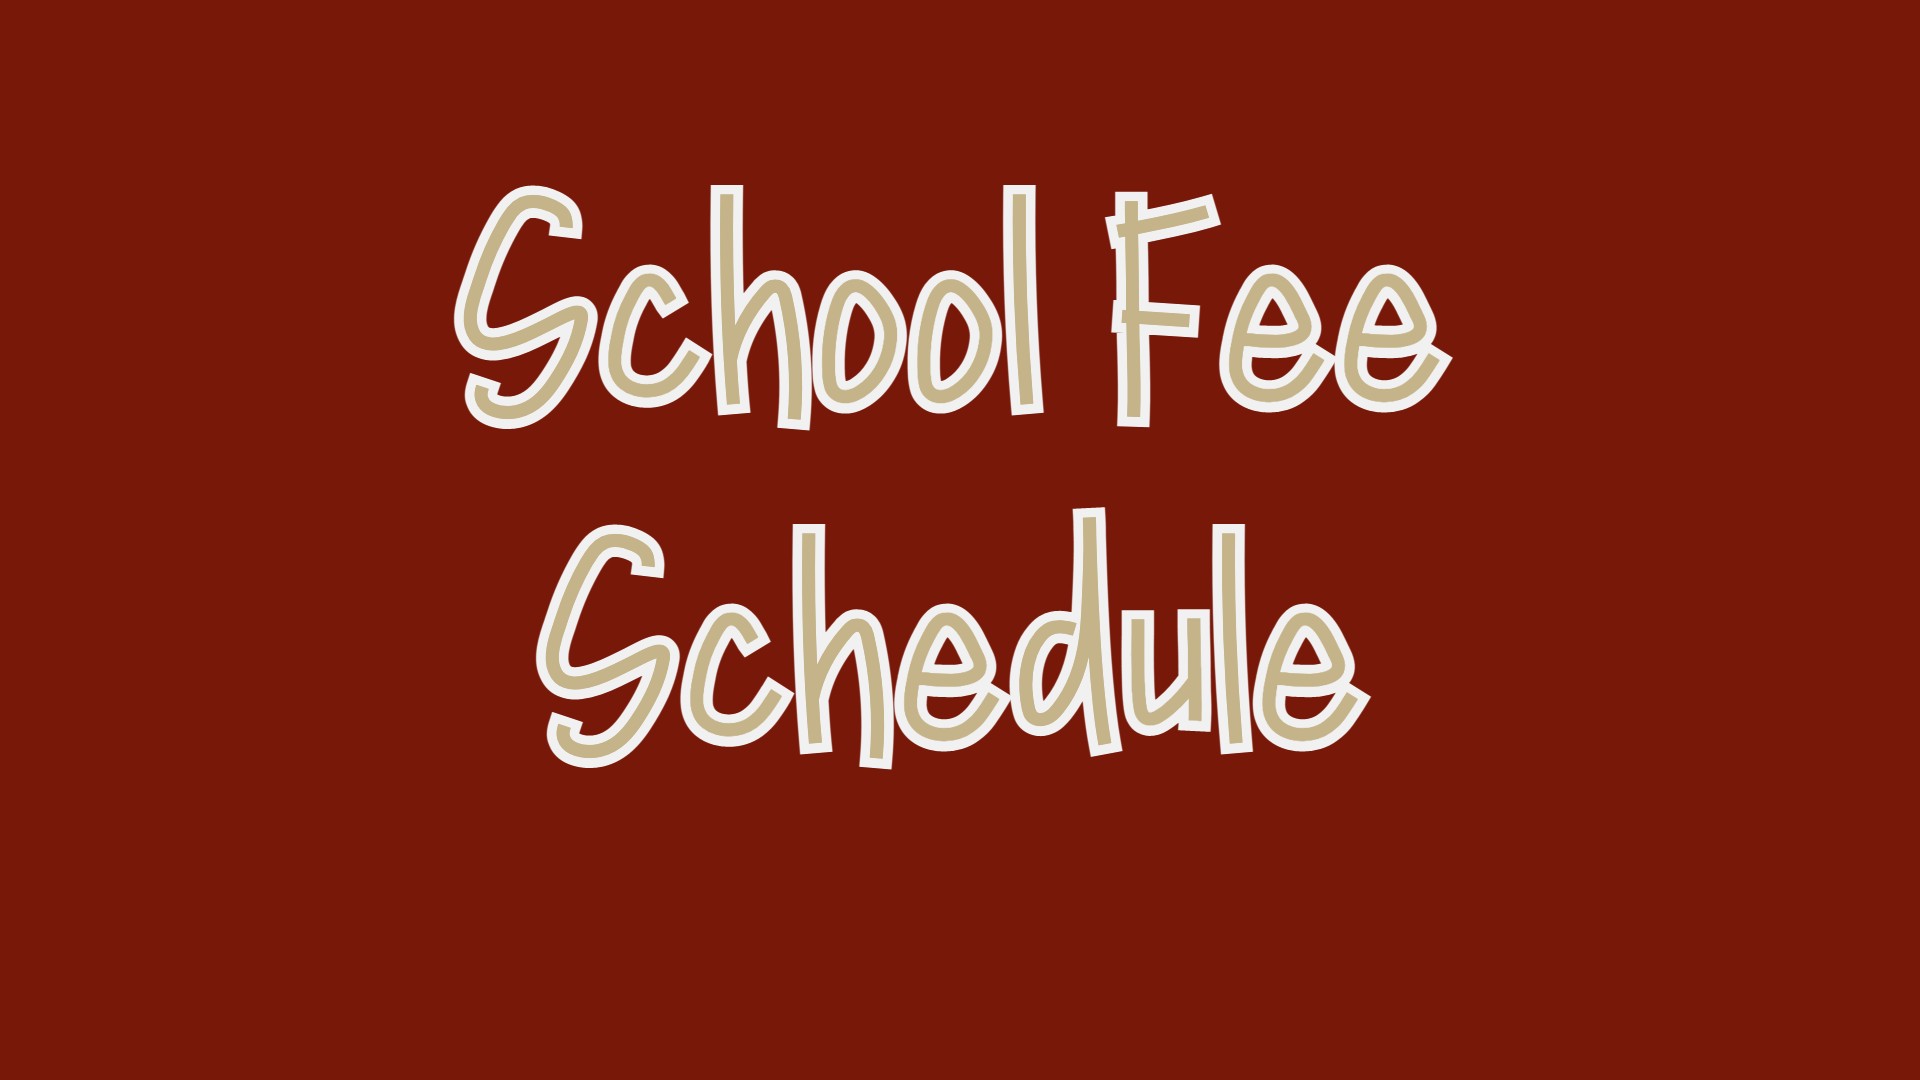 School Fee Schedule